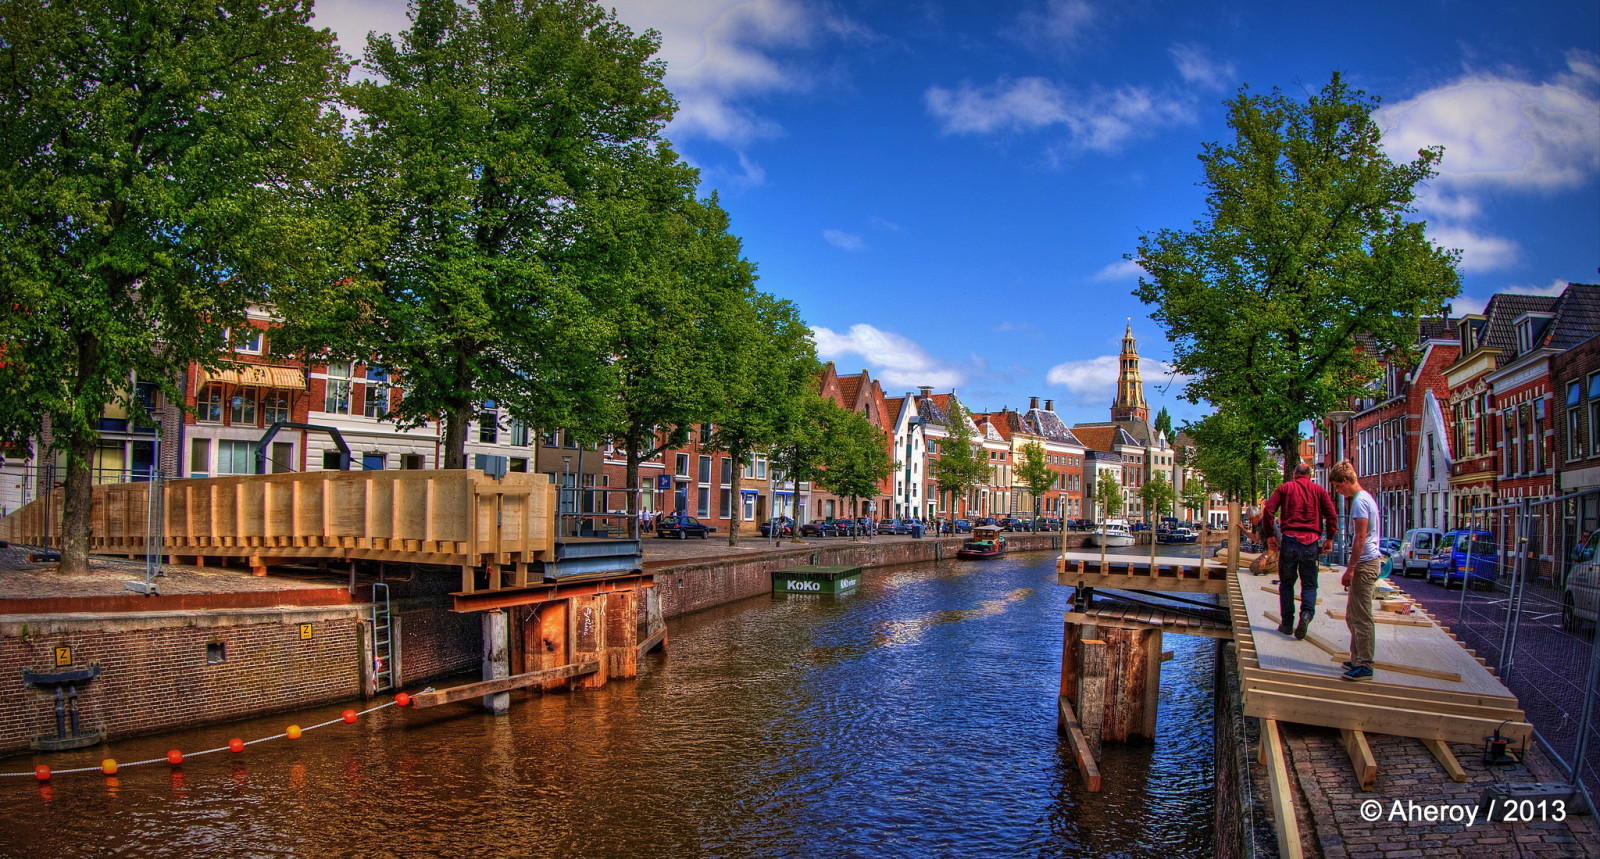 แม่น้ำ, สะพาน, เดินเล่น, HDR, เนเธอร์แลนด์, การก่อสร้าง, Groningen